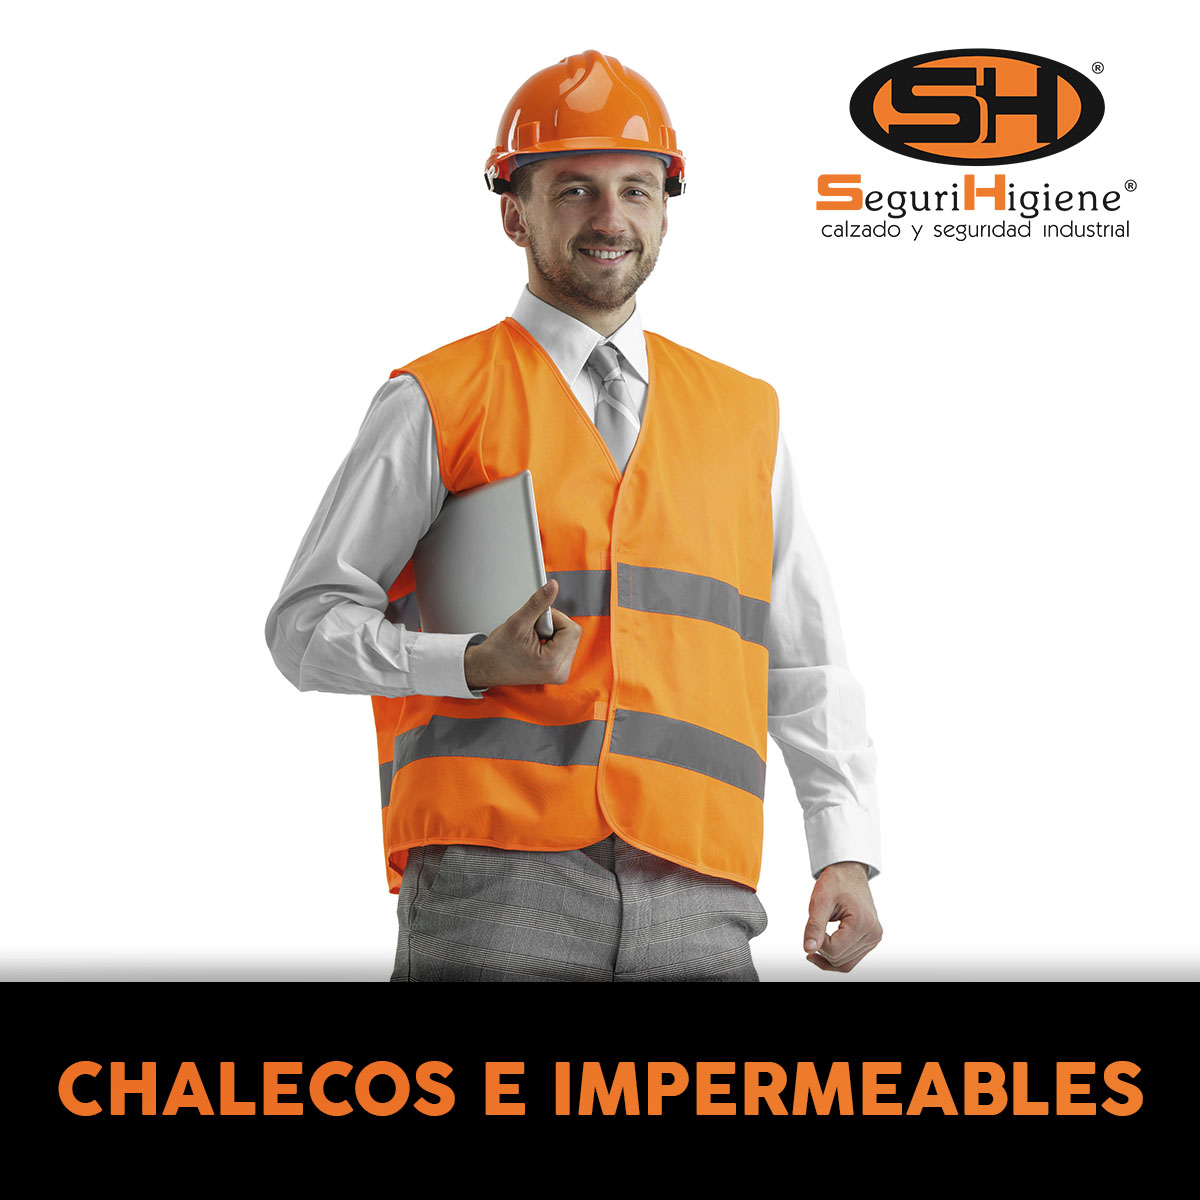 CHALECOS E IMPERMEABLES